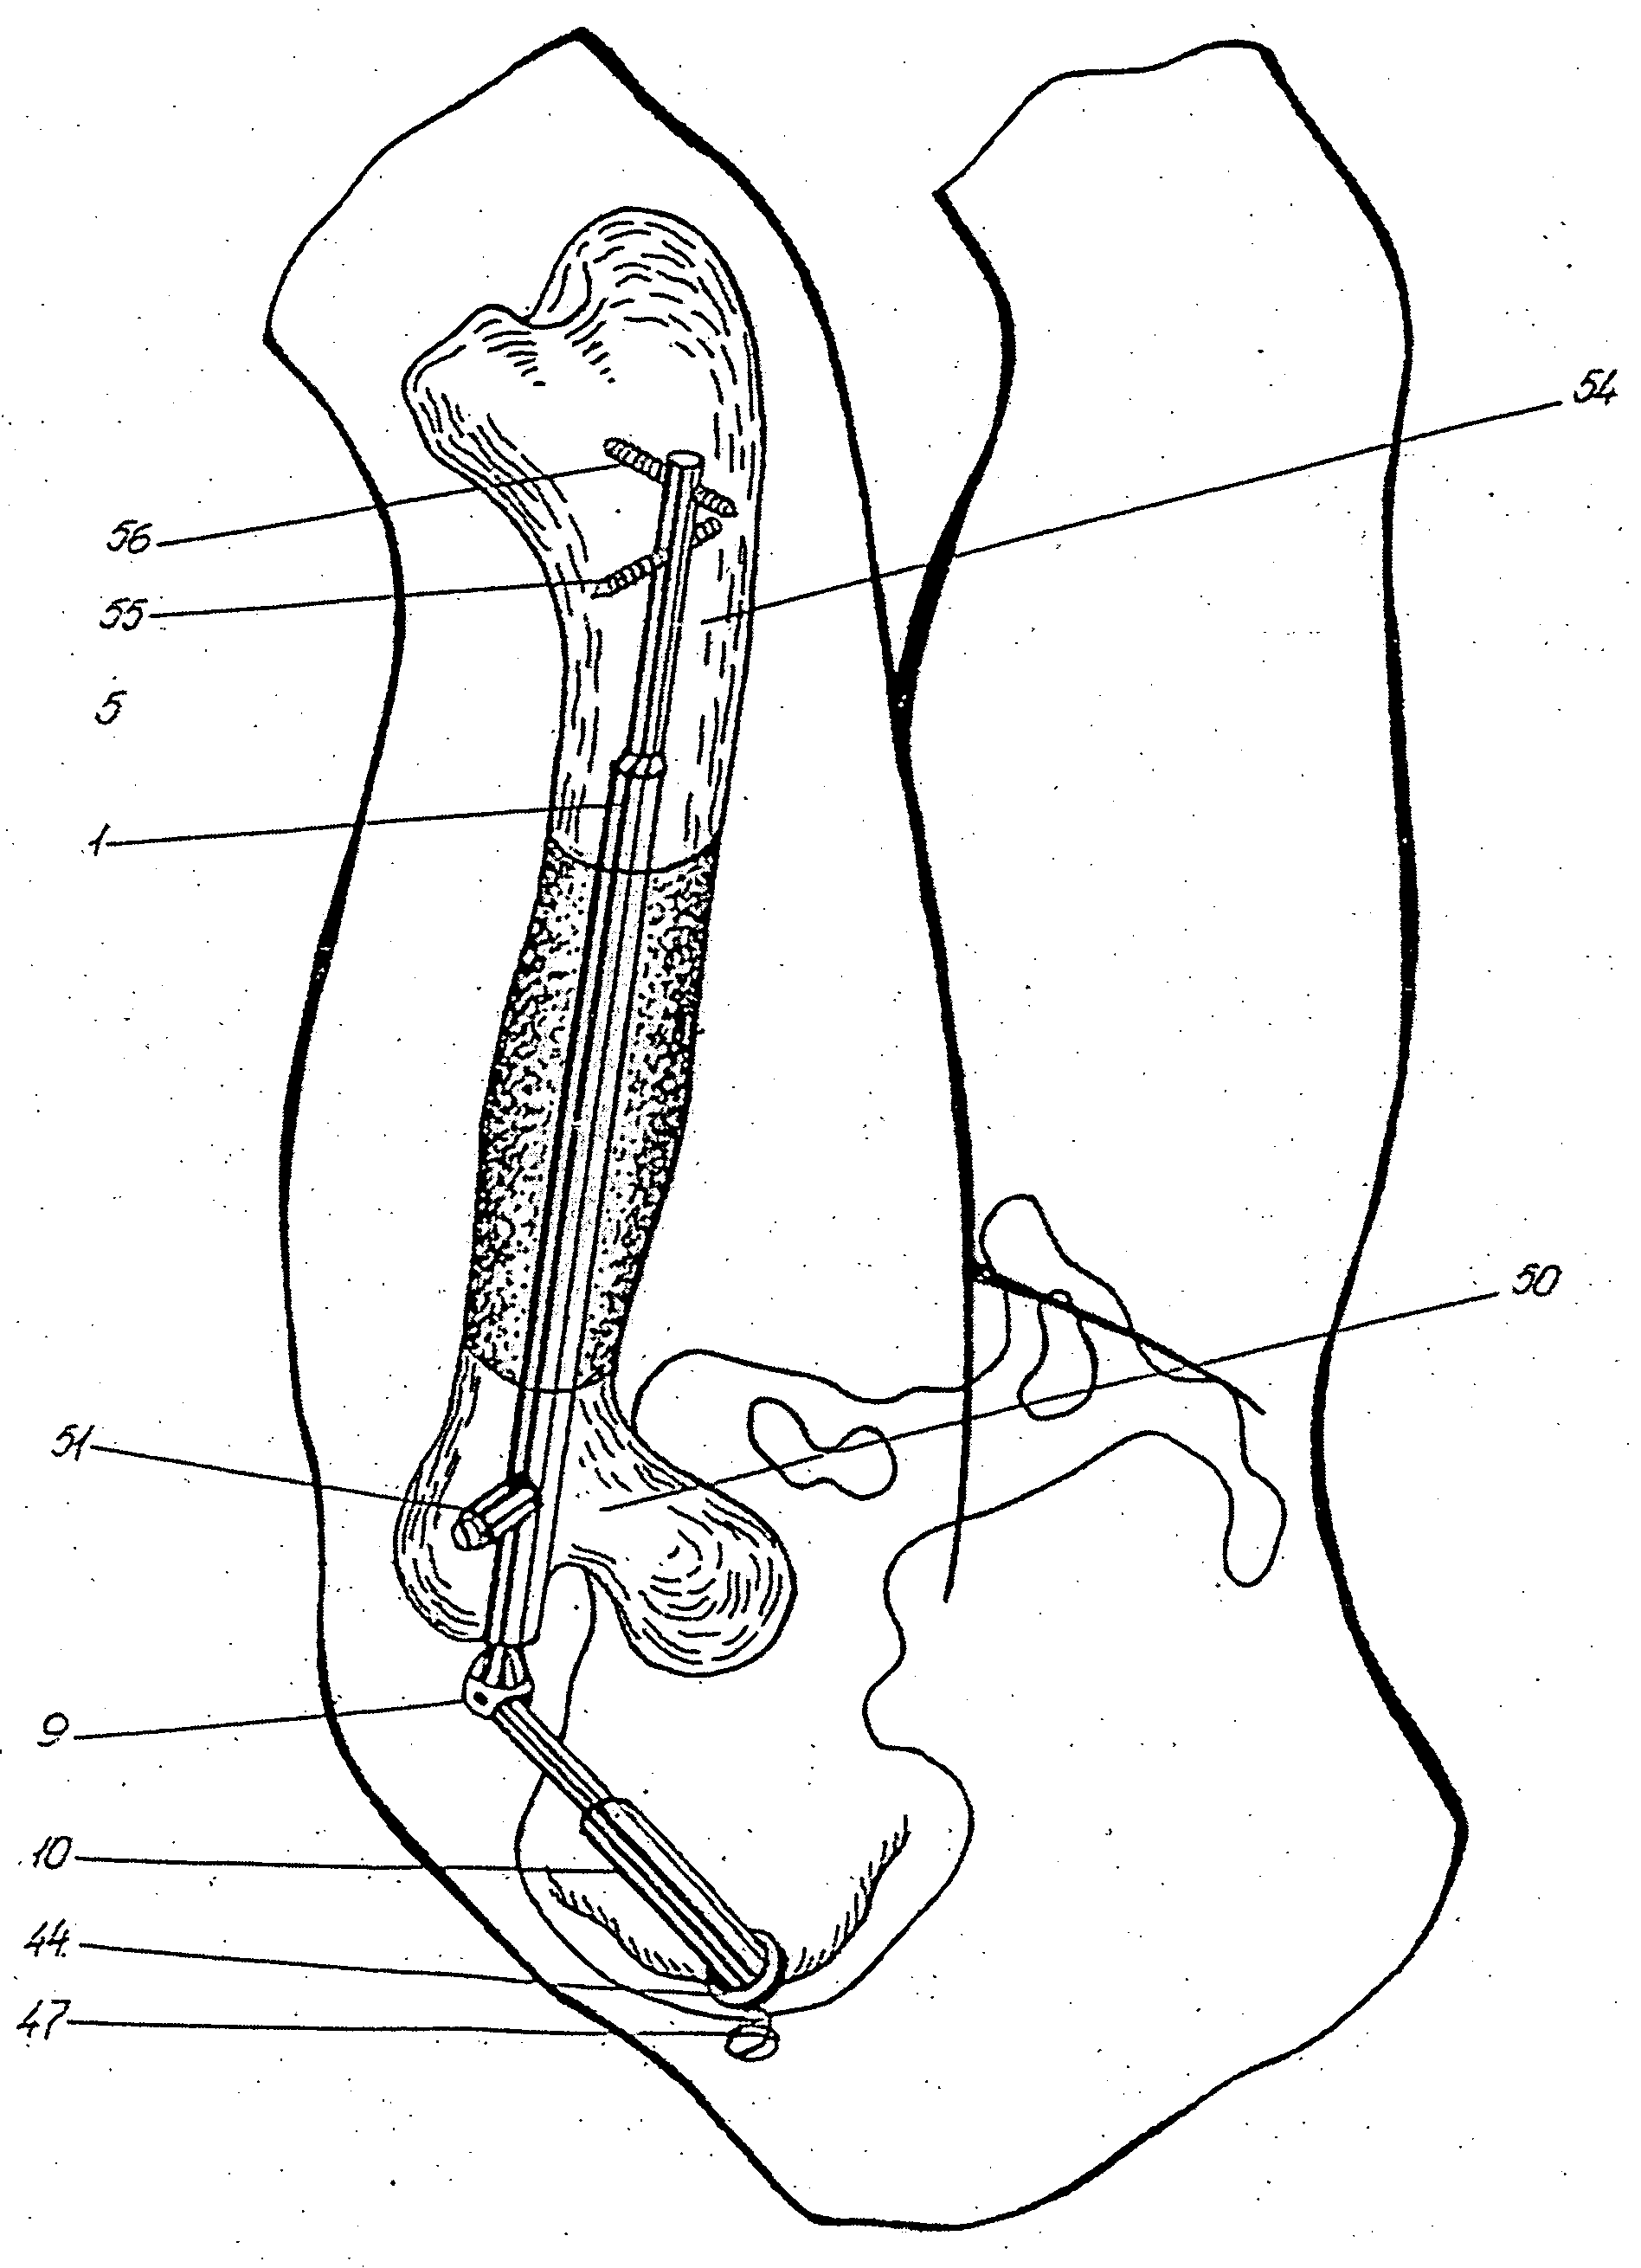 Bliskunov device for elongating long bones